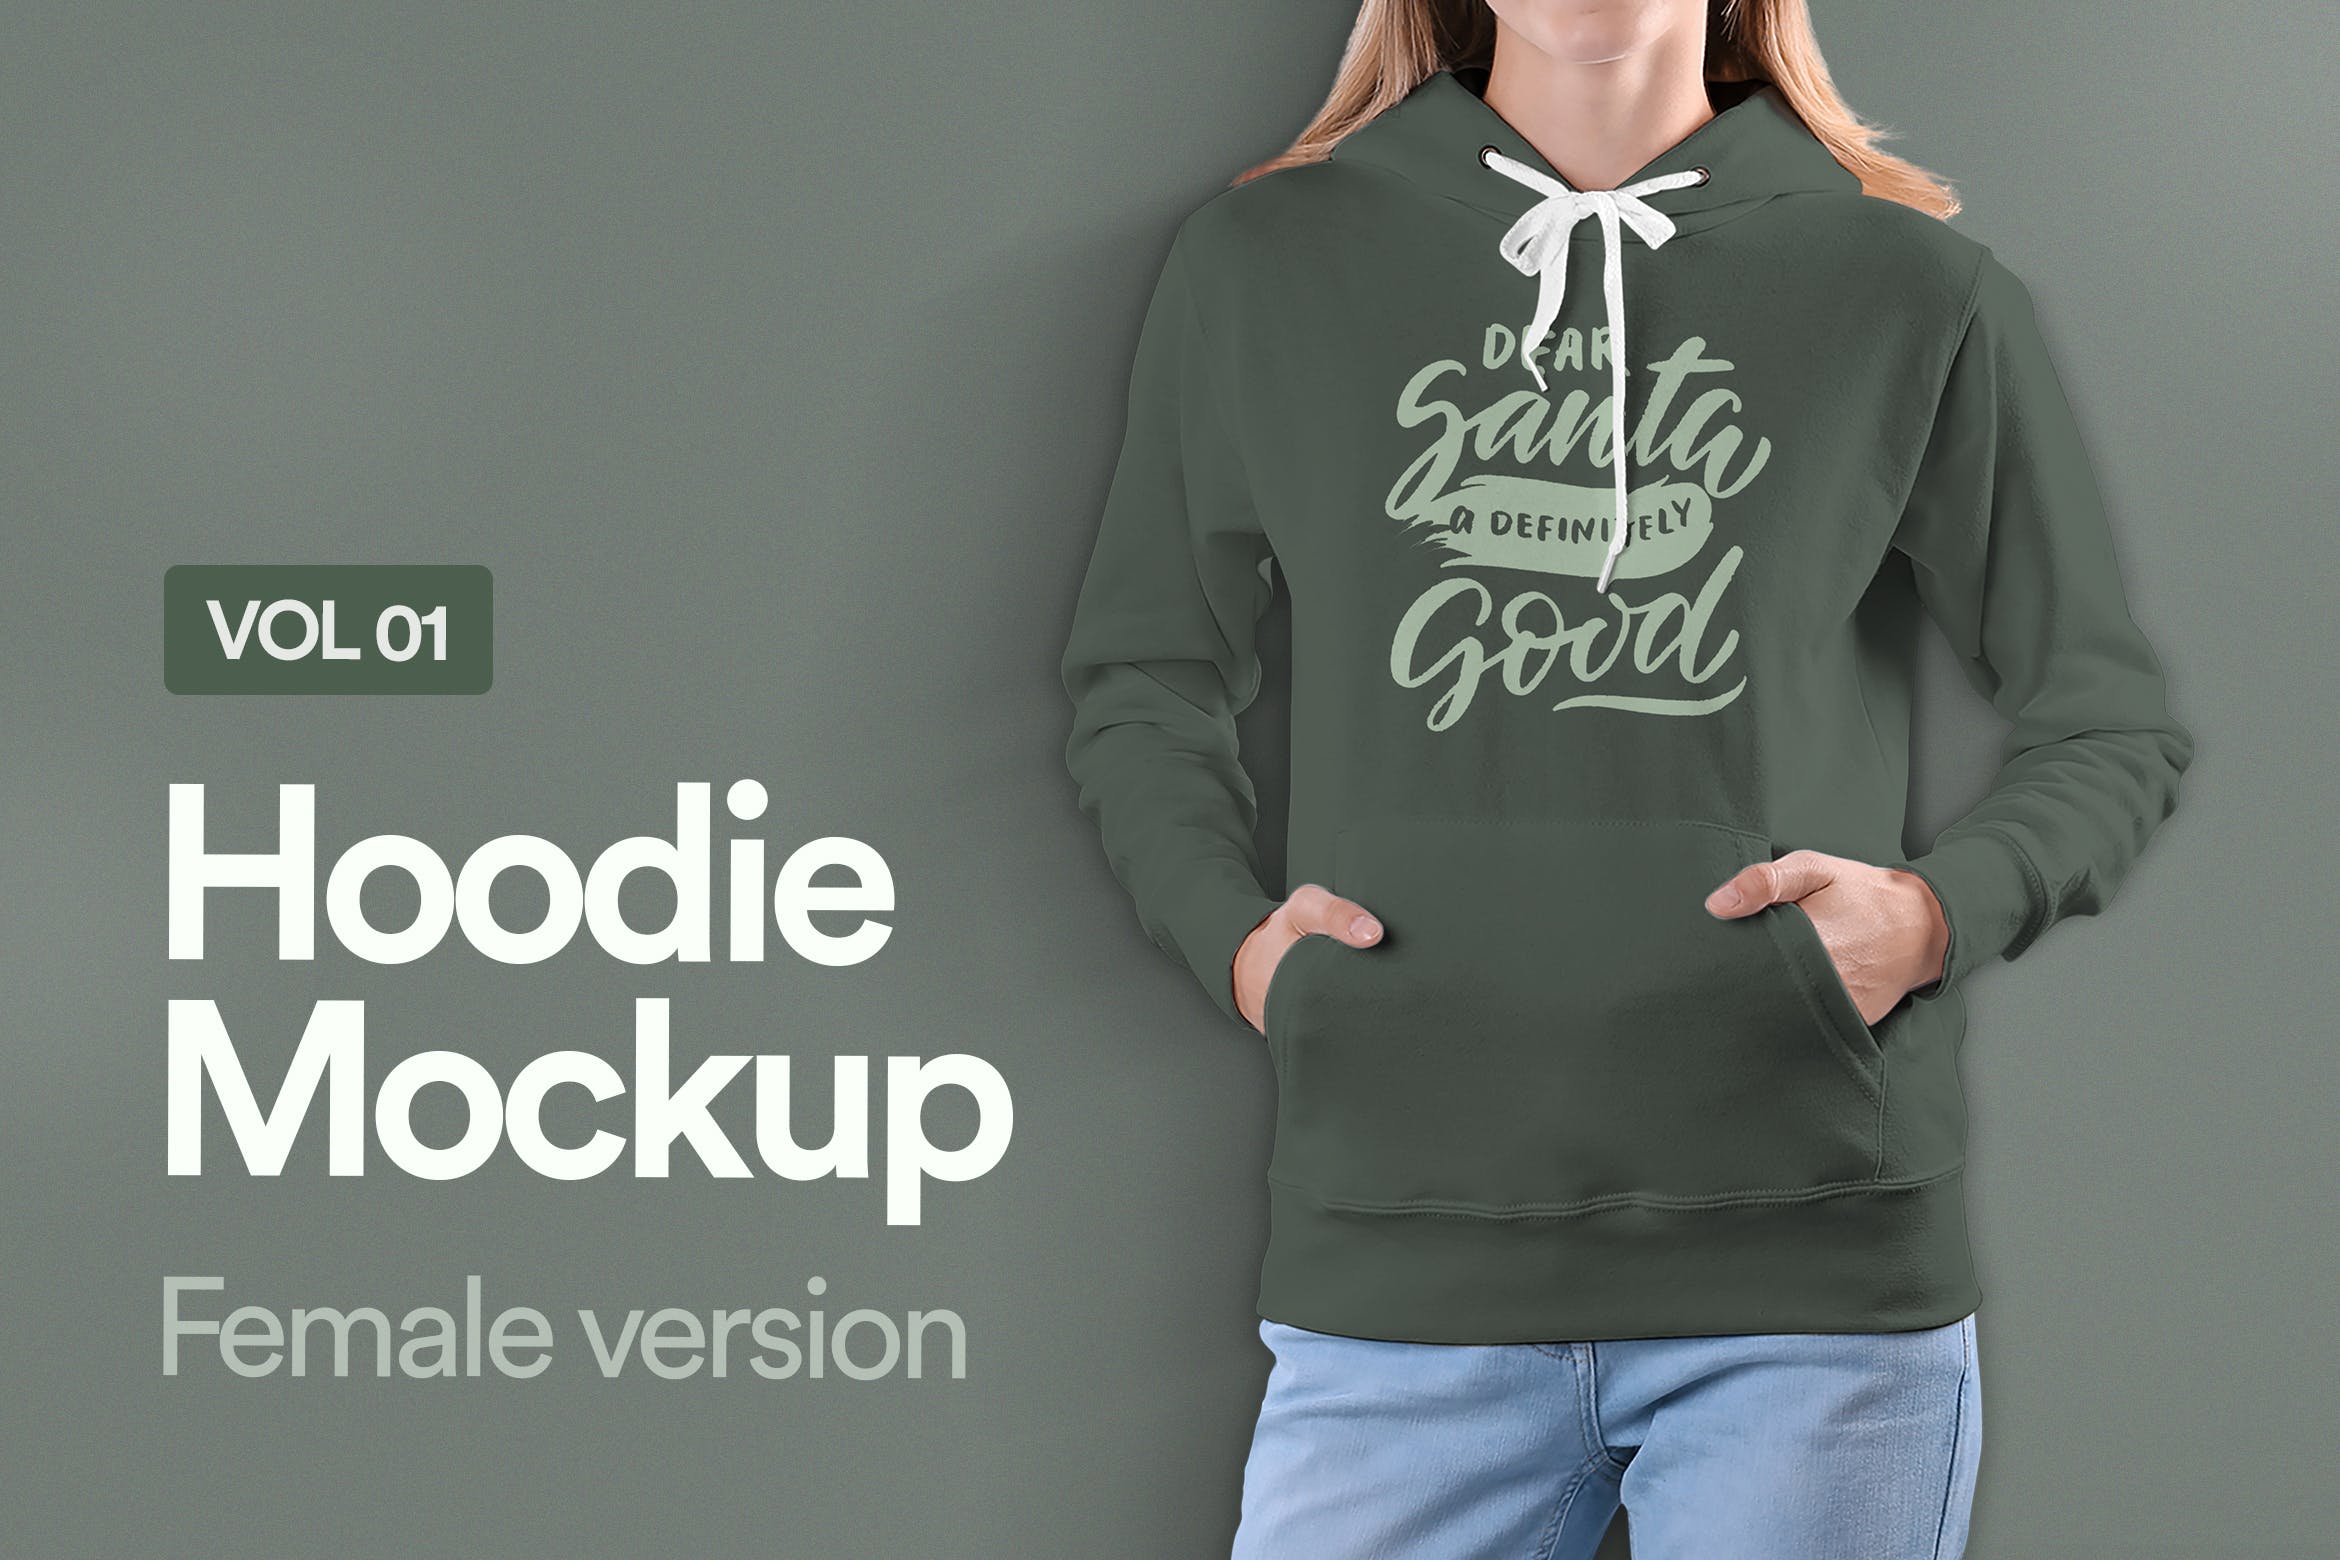 女士连帽卫衣设计预览样机第一素材精选v01 Hoodie Mockup Vol 01插图